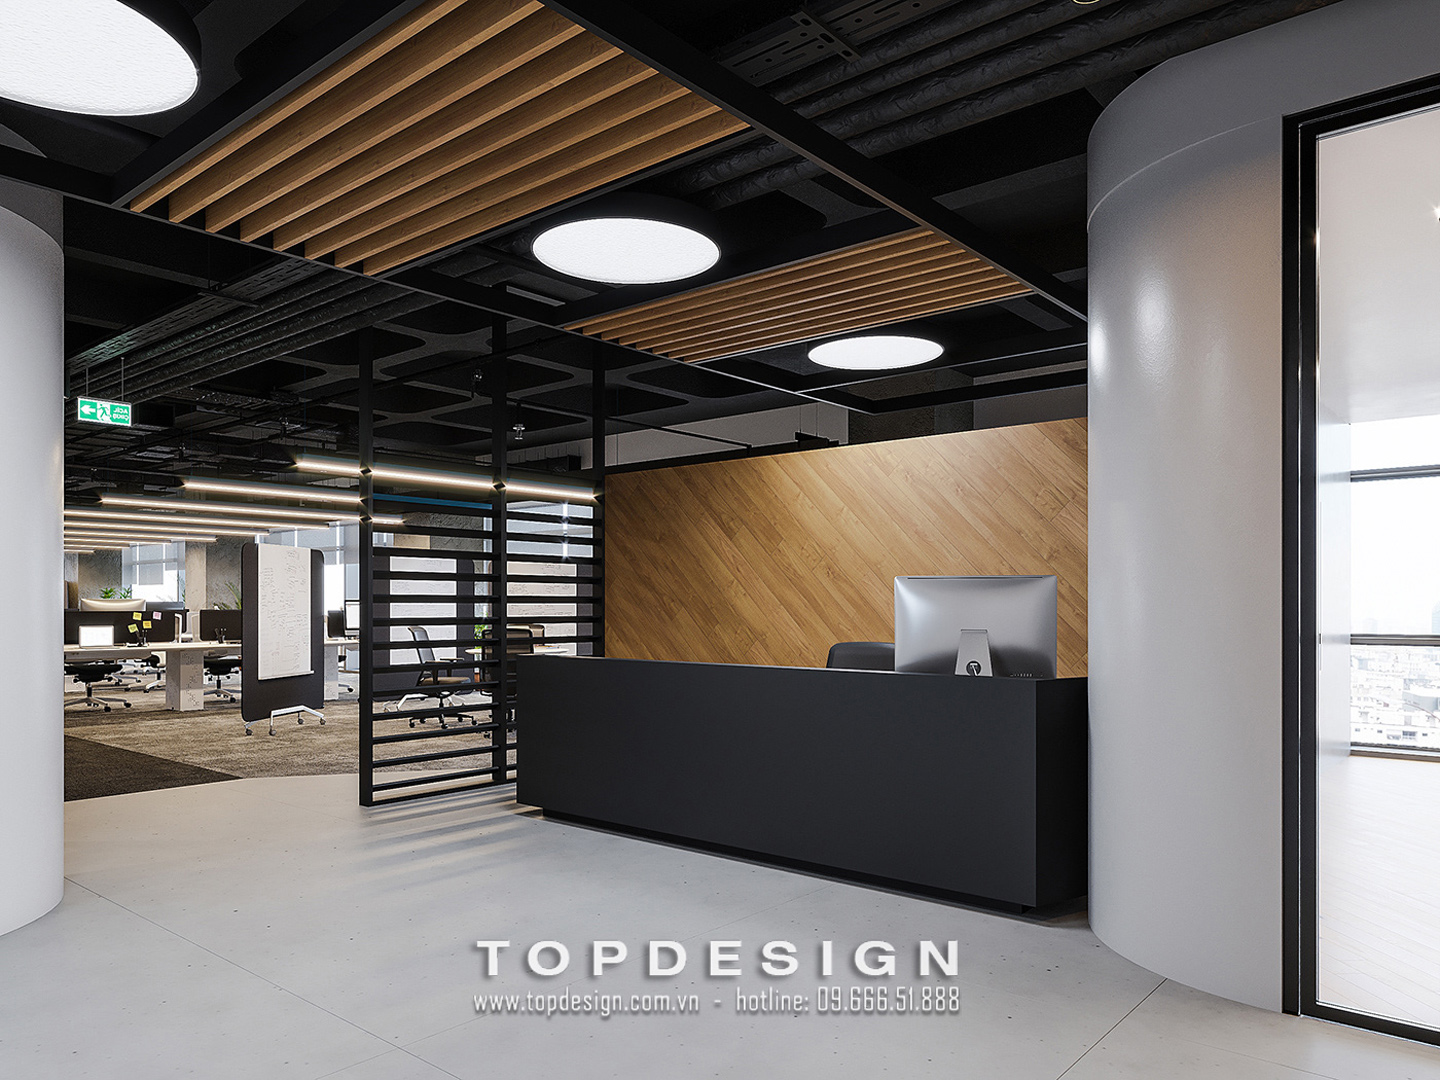 5. Thiết kế lễ tân văn phòng hiện đại_TOPDESIGN